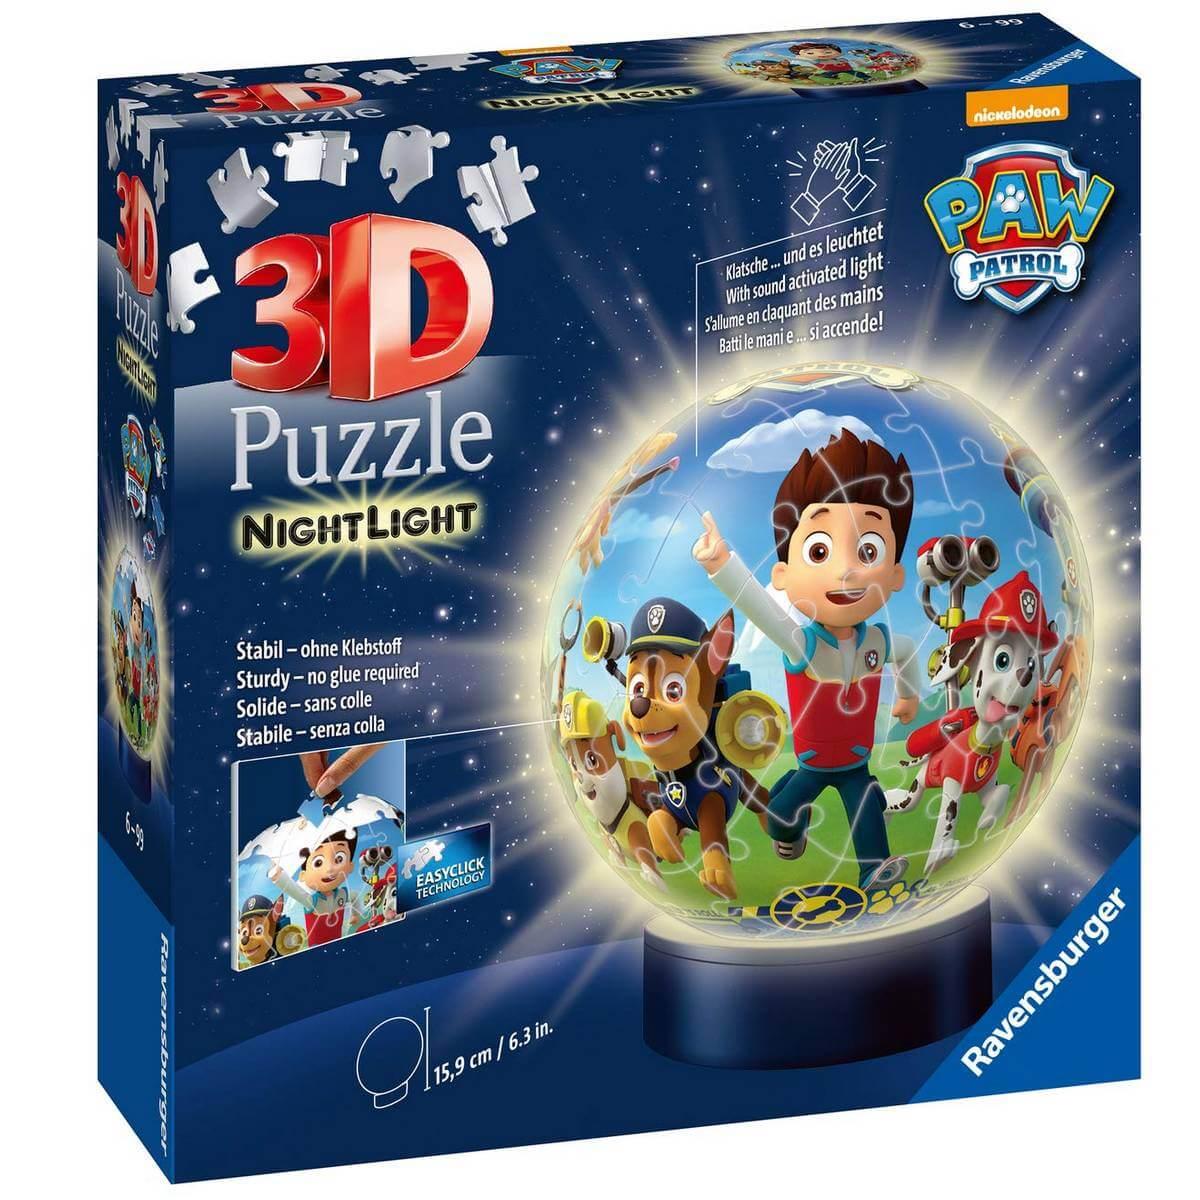 Puzzle 3D Pat patrouille complet pour 6 a 10 ans